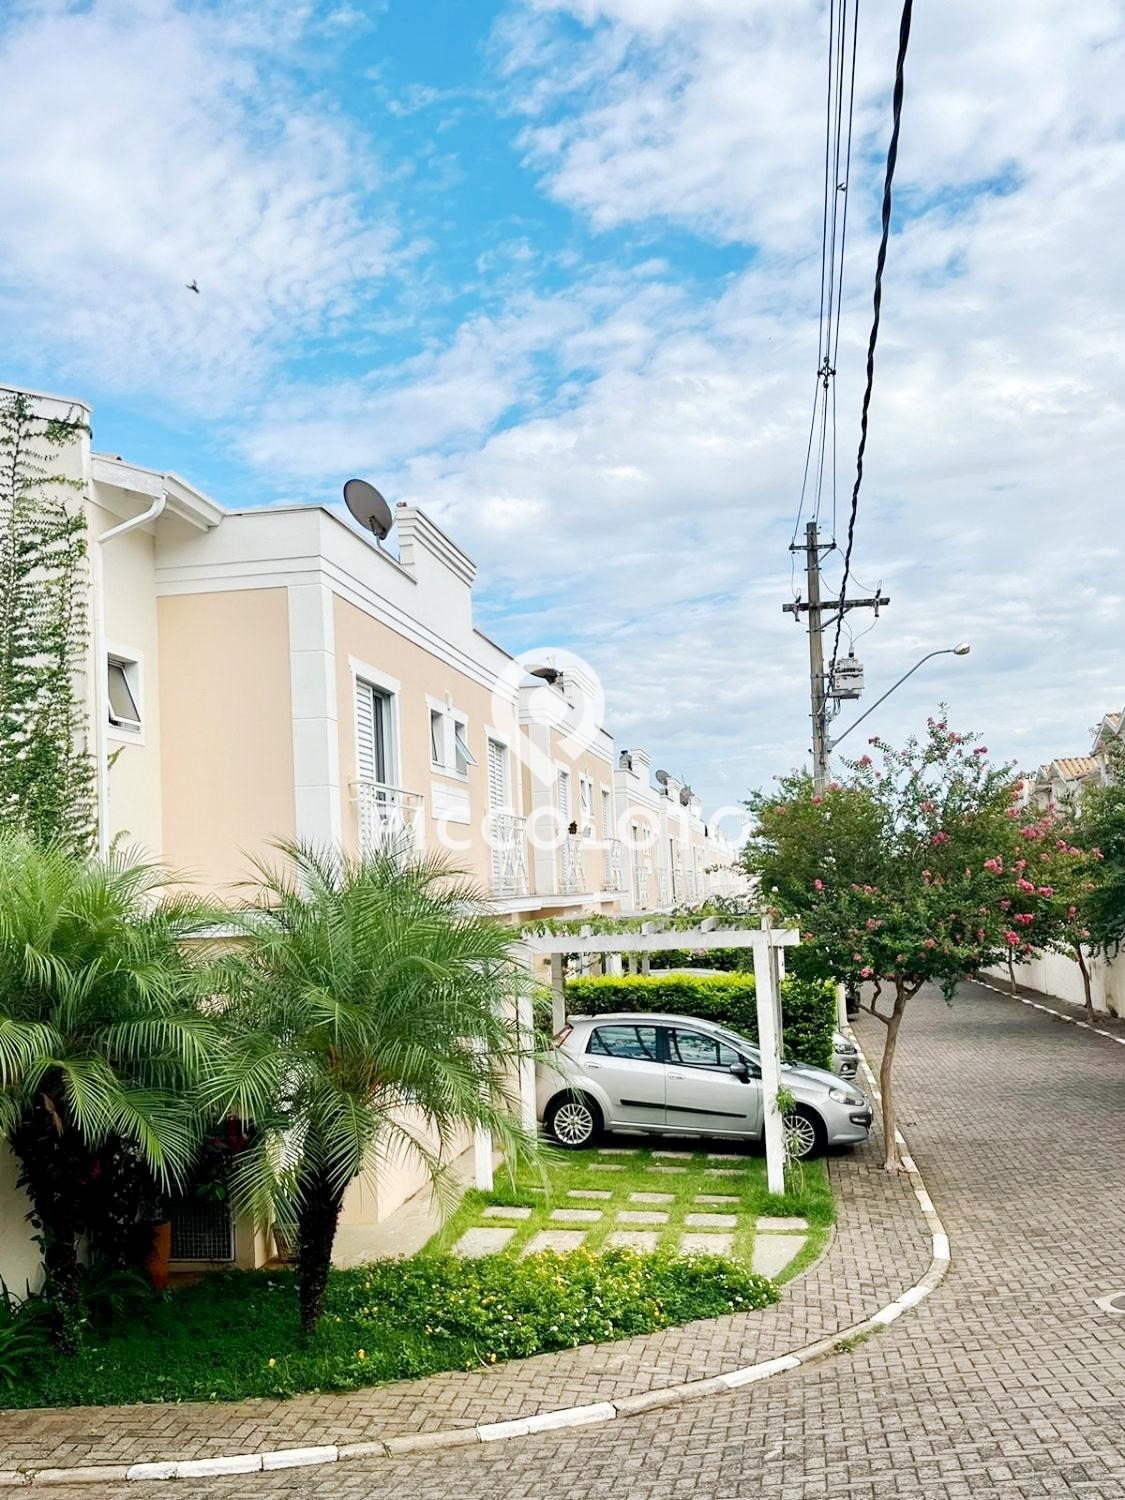 Piccoloto -Casa à venda no Parque Imperador em Campinas